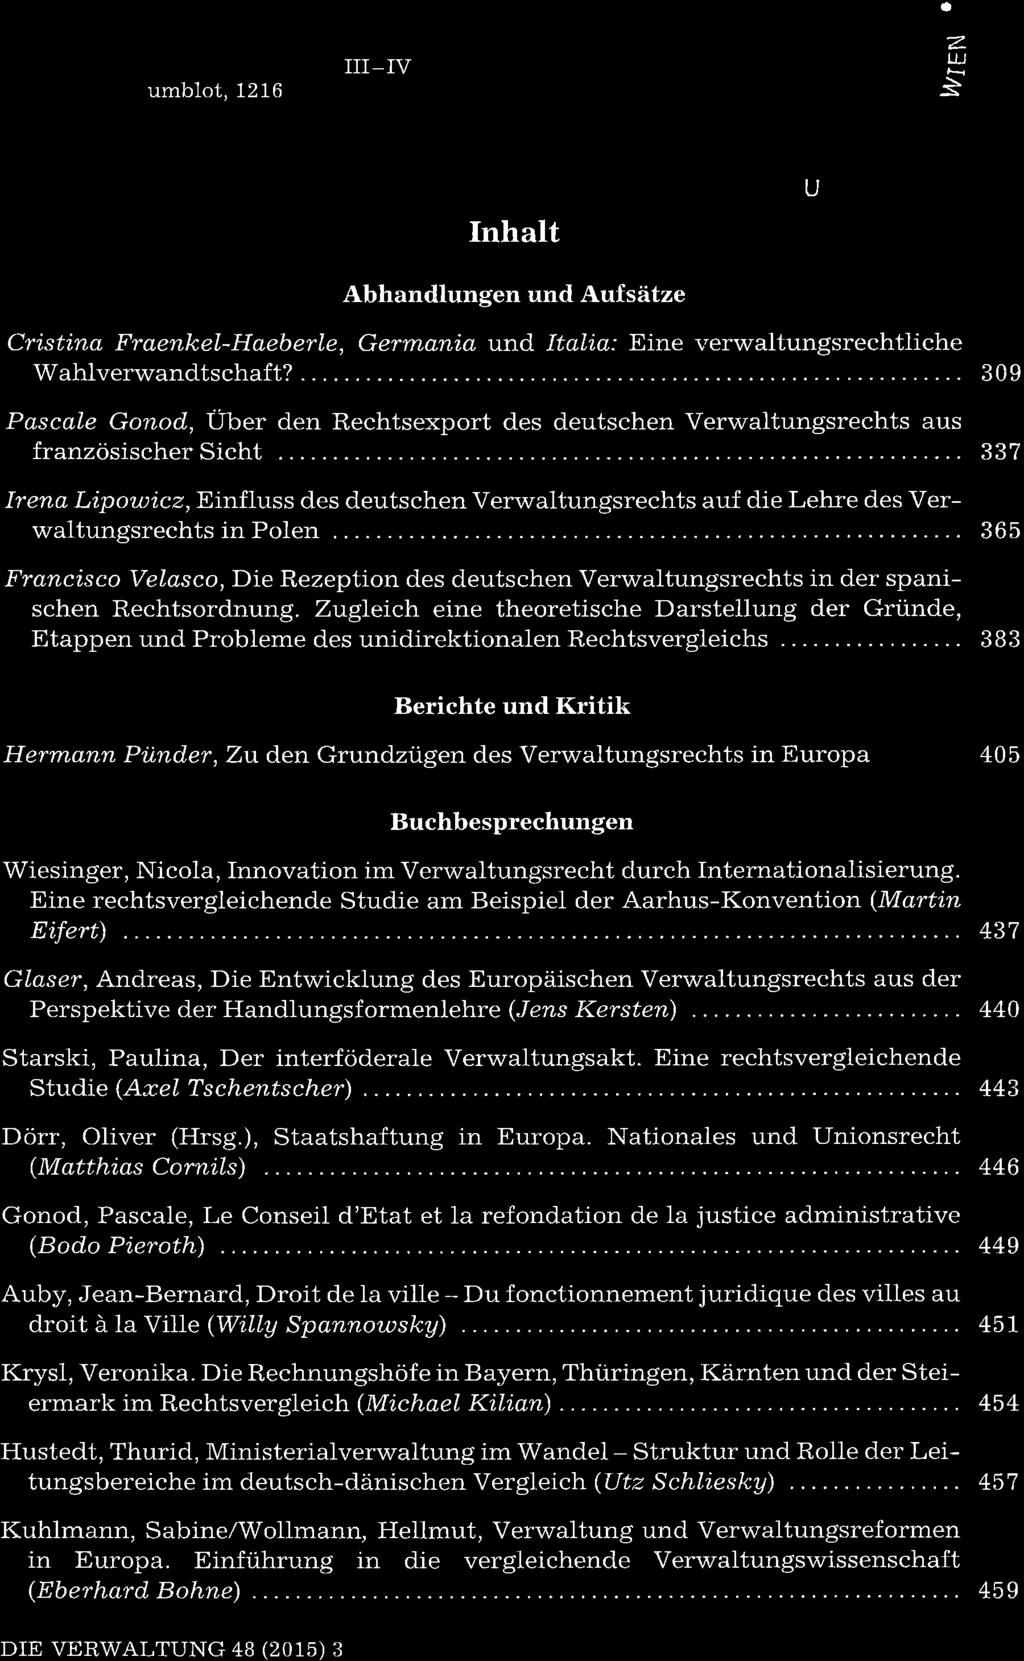 7 015 III_IV umblot, 1216 a Z LLJ È Inhalt U Abhandlungen und Aufsätze Cristino Fraenkel-Haeberle, Germani,a und Itali,a.' Eine verwaltungsrechtliche Wahlverwandtschaft?